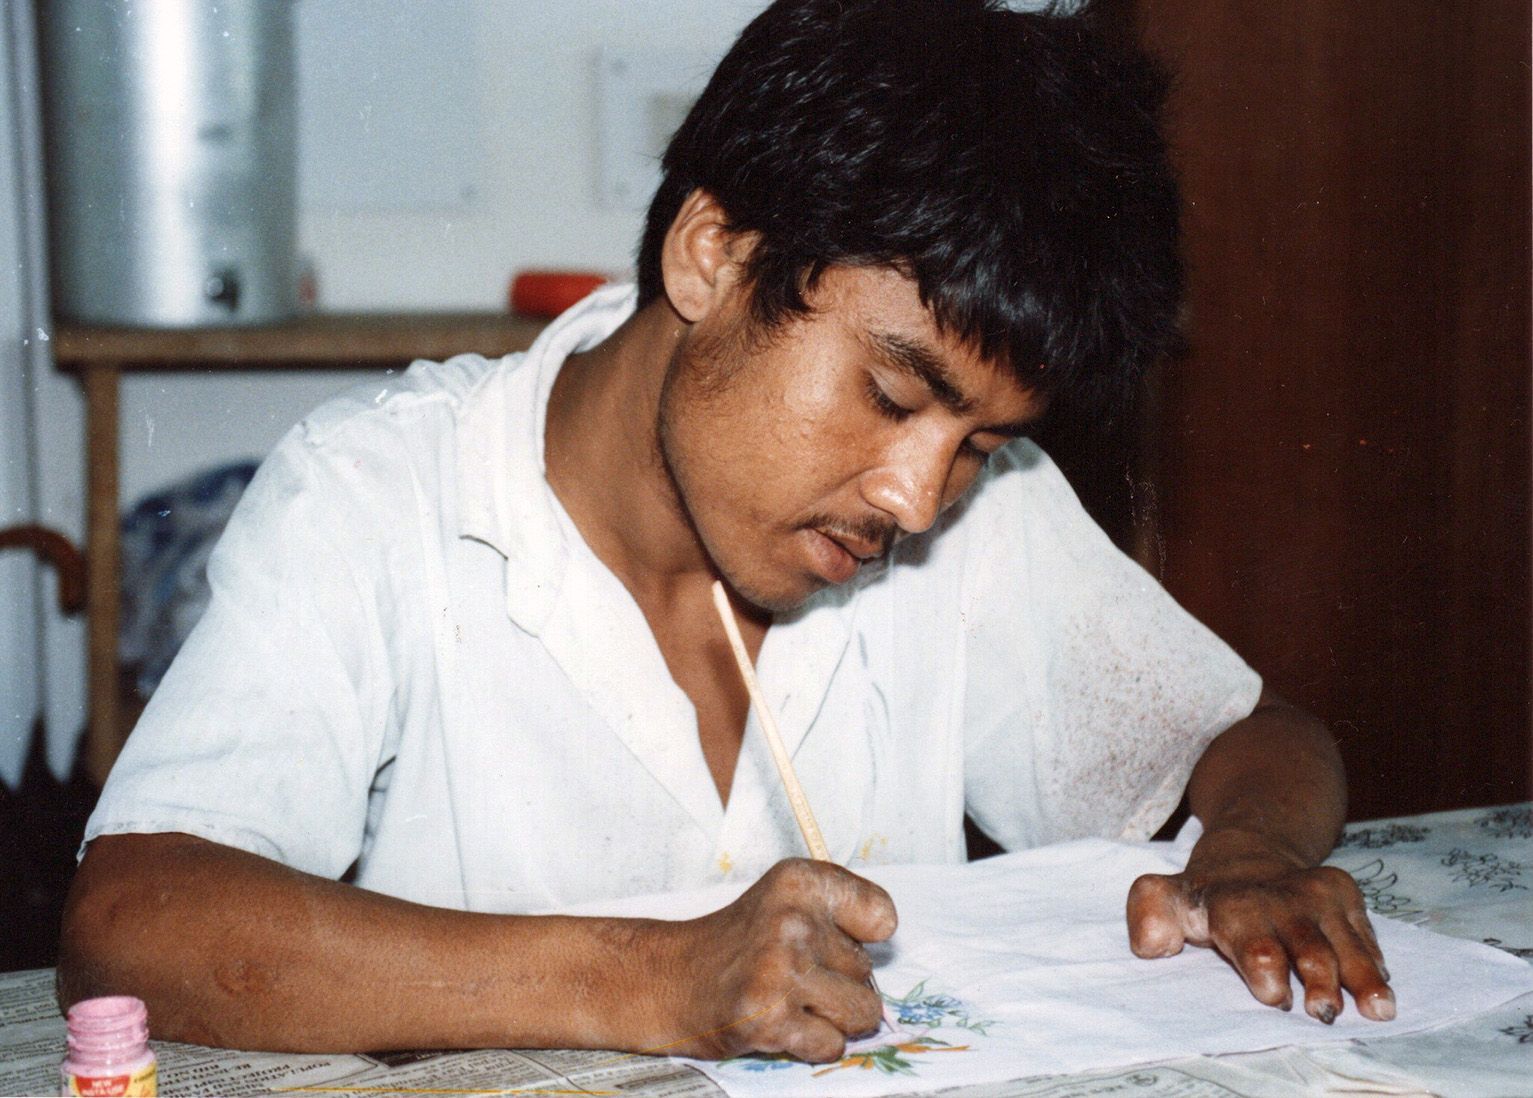 Kuvassa on nuori nepalilaismies, joka piirtää tai kirjoittaa valkoisessa paidassa. Miehellä on ruskea iho ja tummat hiukset ja viikset. Hänen sormensa näyttävät surkastuneilta. Ilme on keskittynyt.